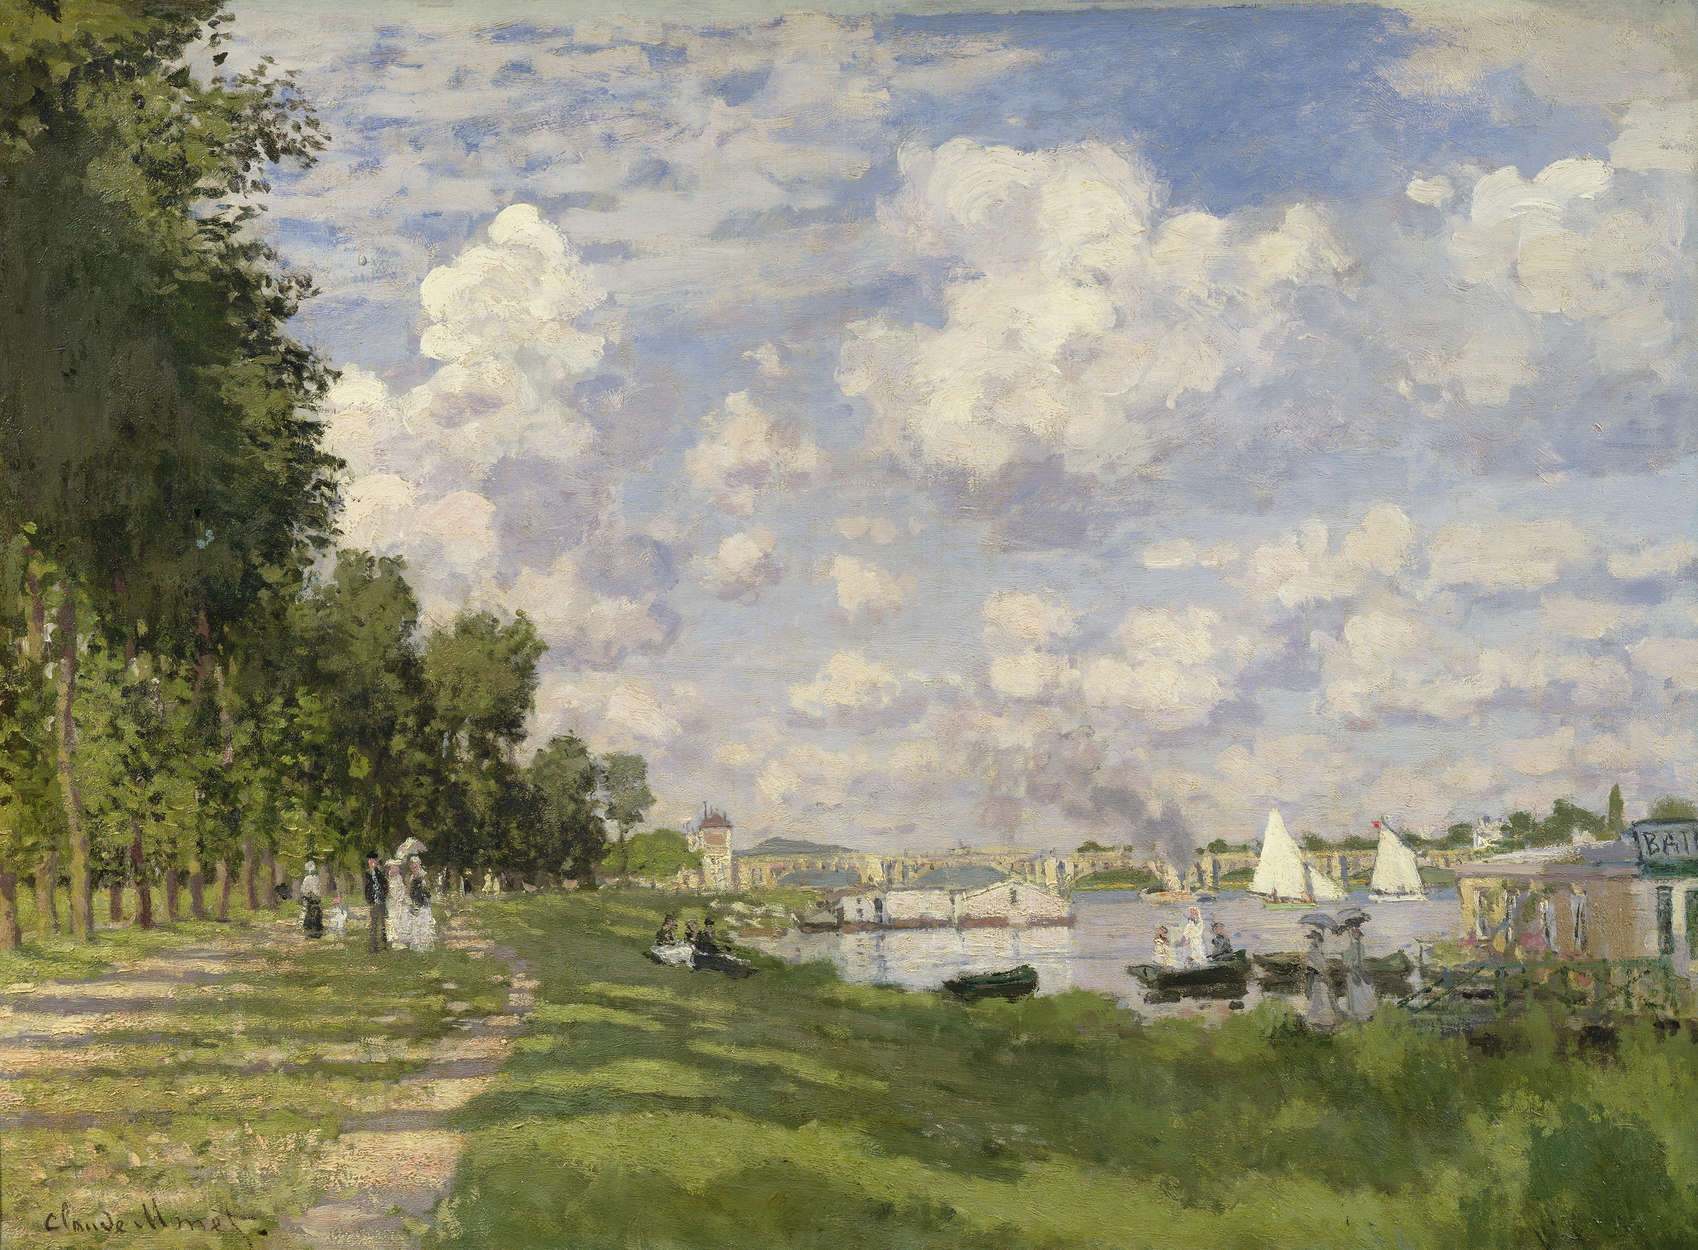             Papier peint panoramique "Le port de plaisance d'Argenteuil" de Claude Monet
        